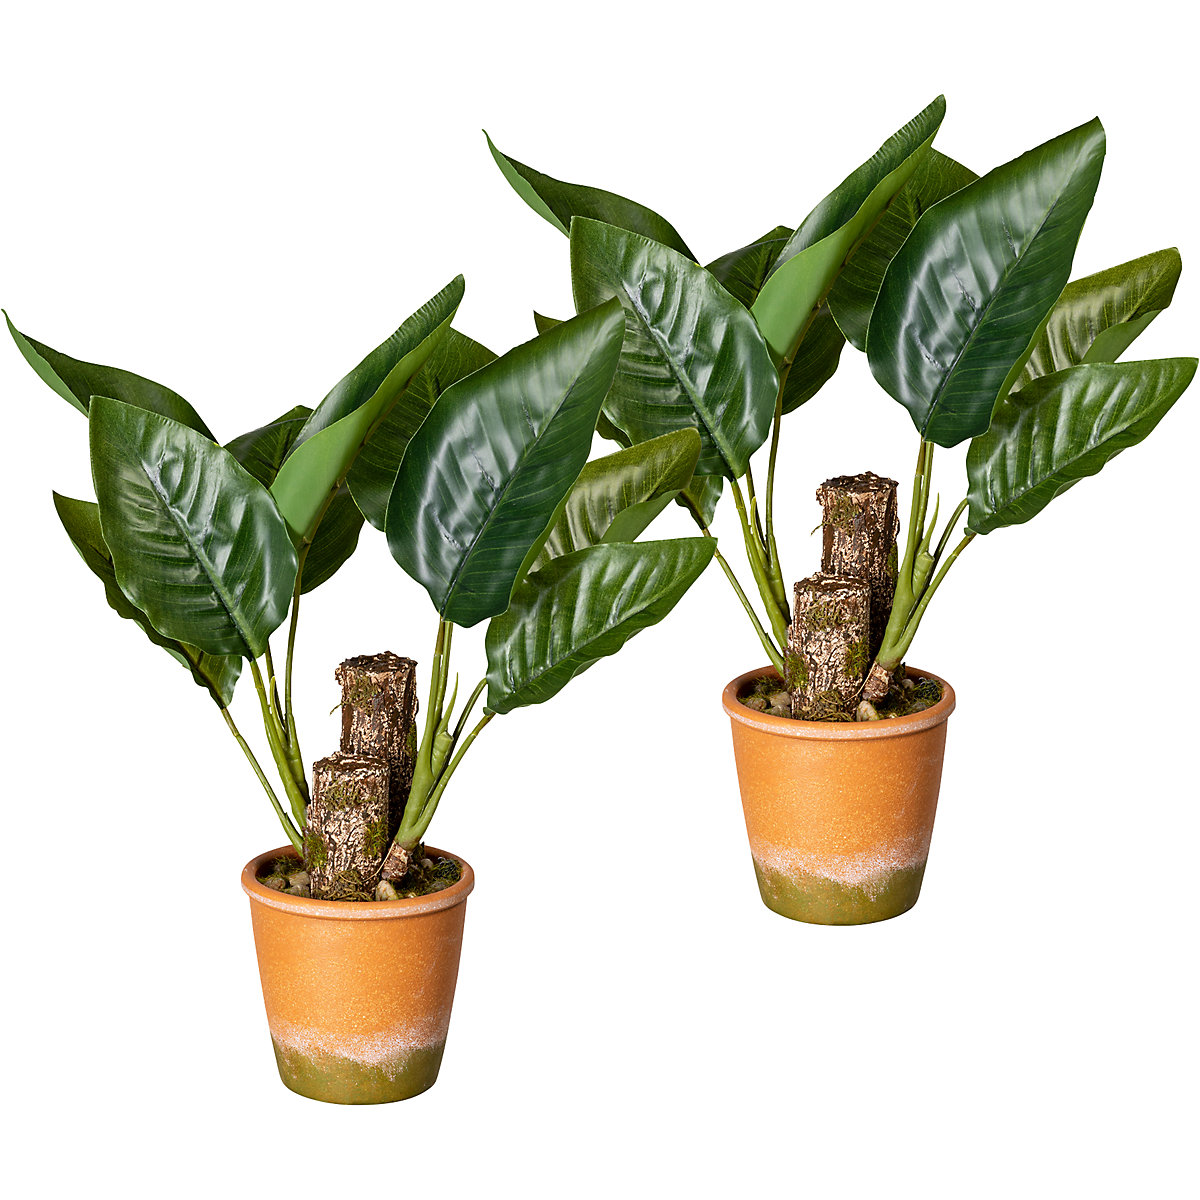 Planta com folhas de canácea, embalagem de 2 unid., em paperpot com gravilha, altura aprox. 450 mm